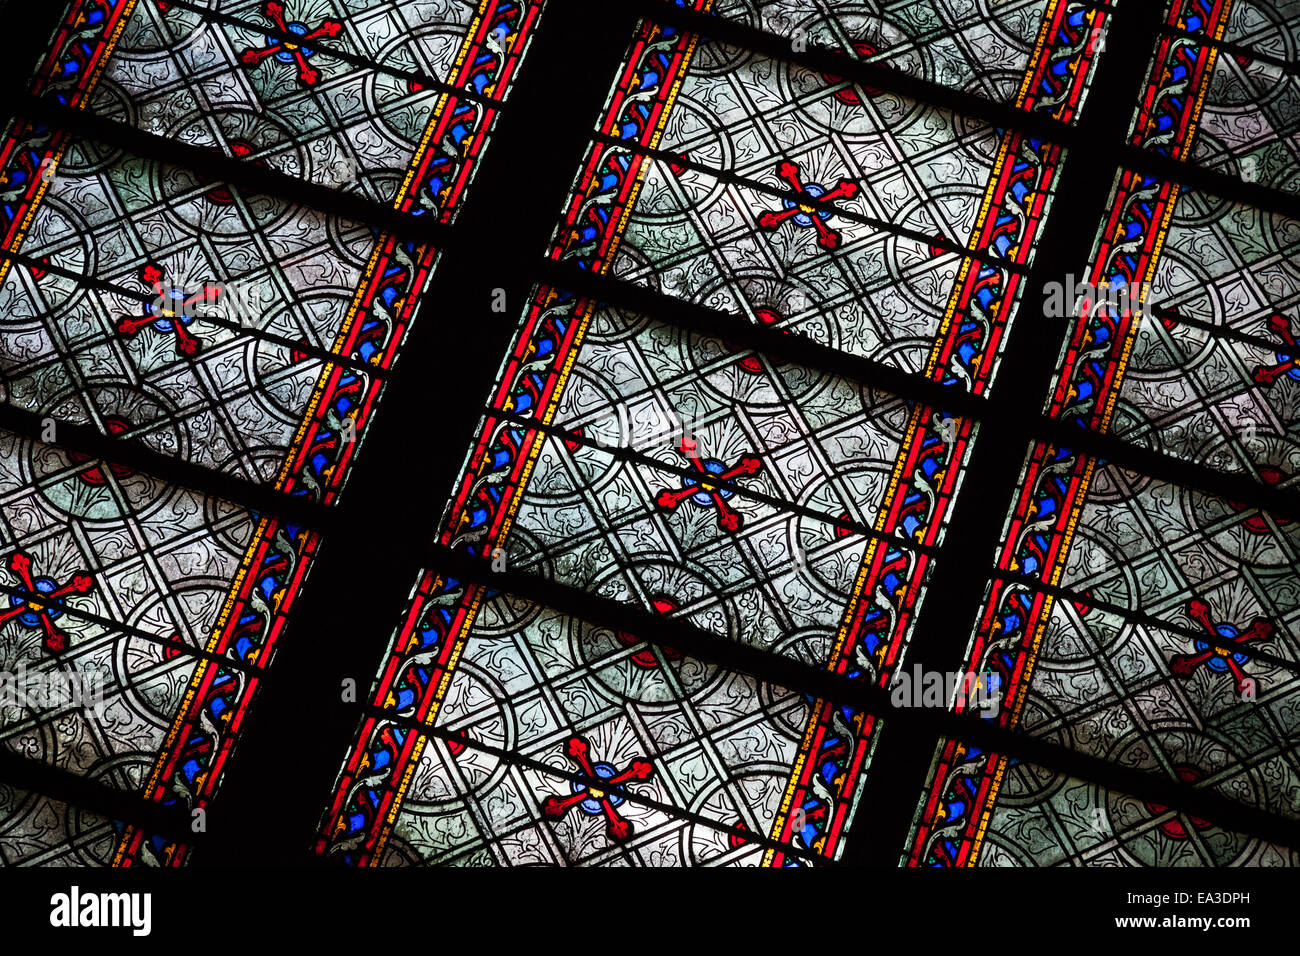 Paris, France - 11 août 2014 : Fragment de vitrail avec motif médiéval dans la cathédrale Notre Dame de Paris Banque D'Images